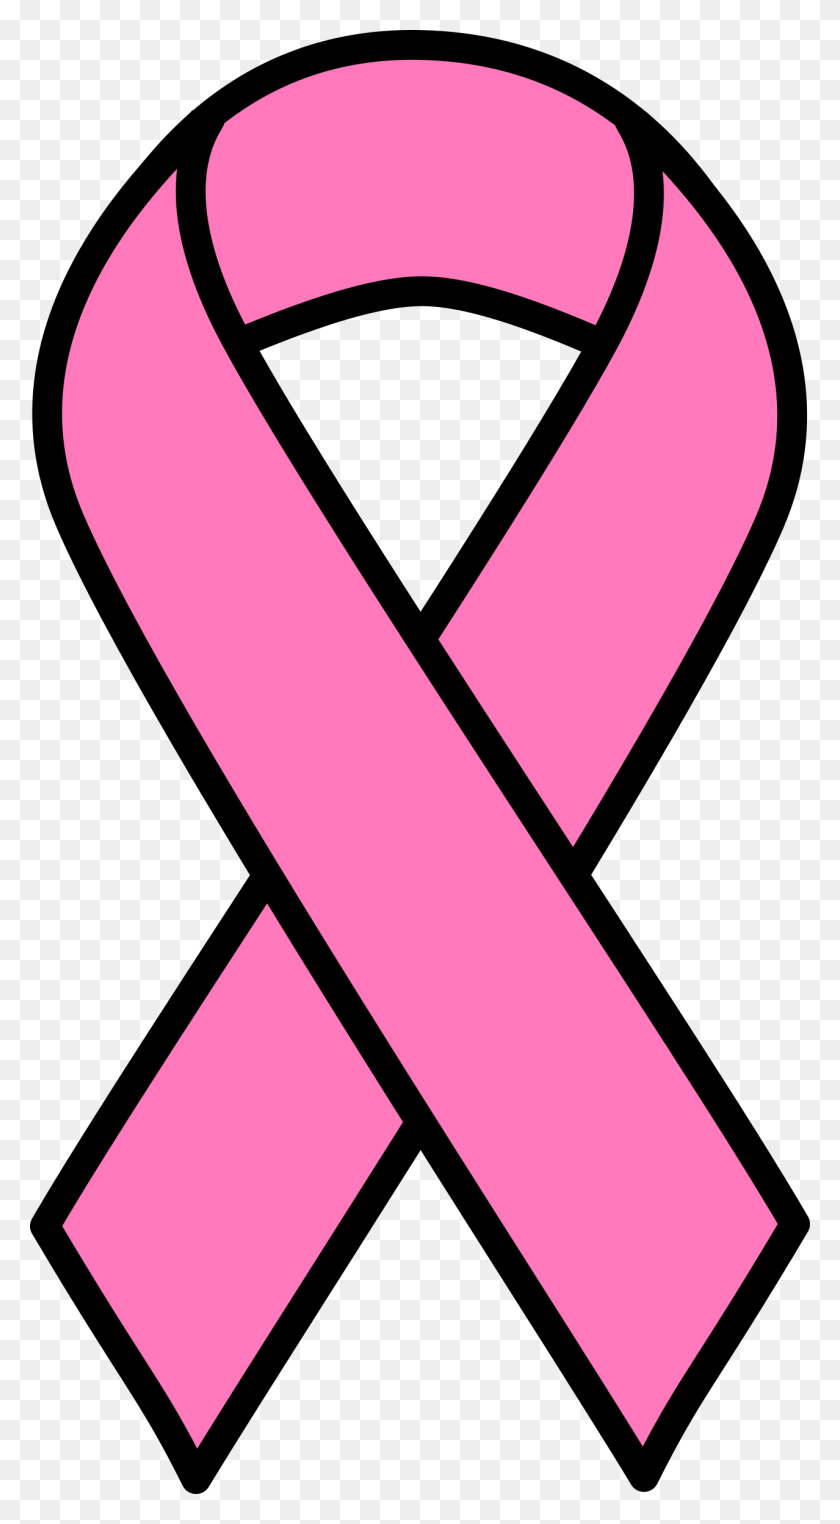 1278x2400 Pink Cancer Ribbon Clip Art Look At Pink Cancer Ribbon Clip Art - Town Council Clipart